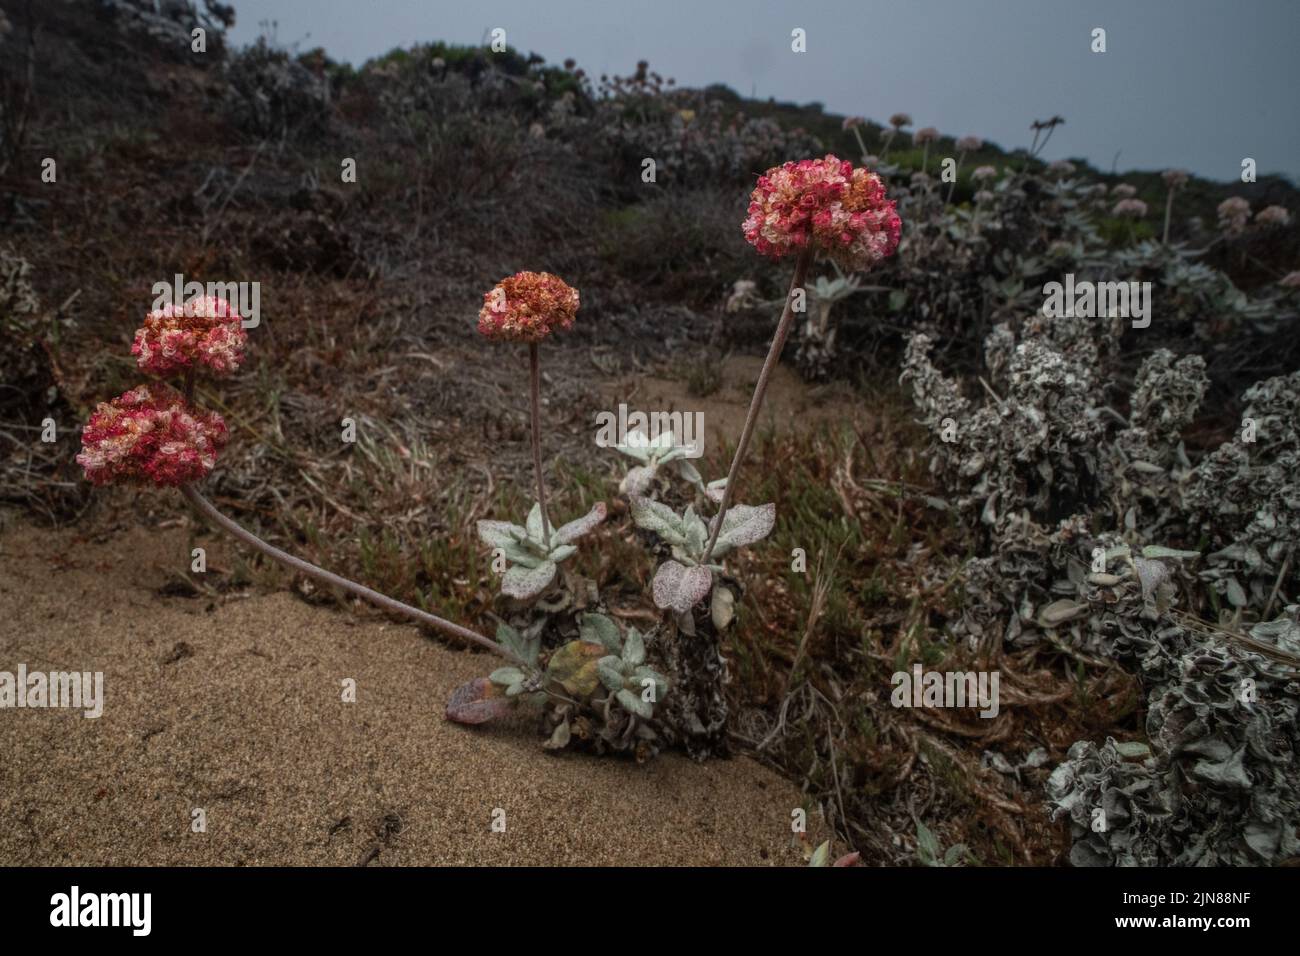 Sarrasin côtier (Eriogonum latifolium) poussant sur un habitat de dunes de sable dans le littoral de la Californie à point Reyes National Seahore. Banque D'Images